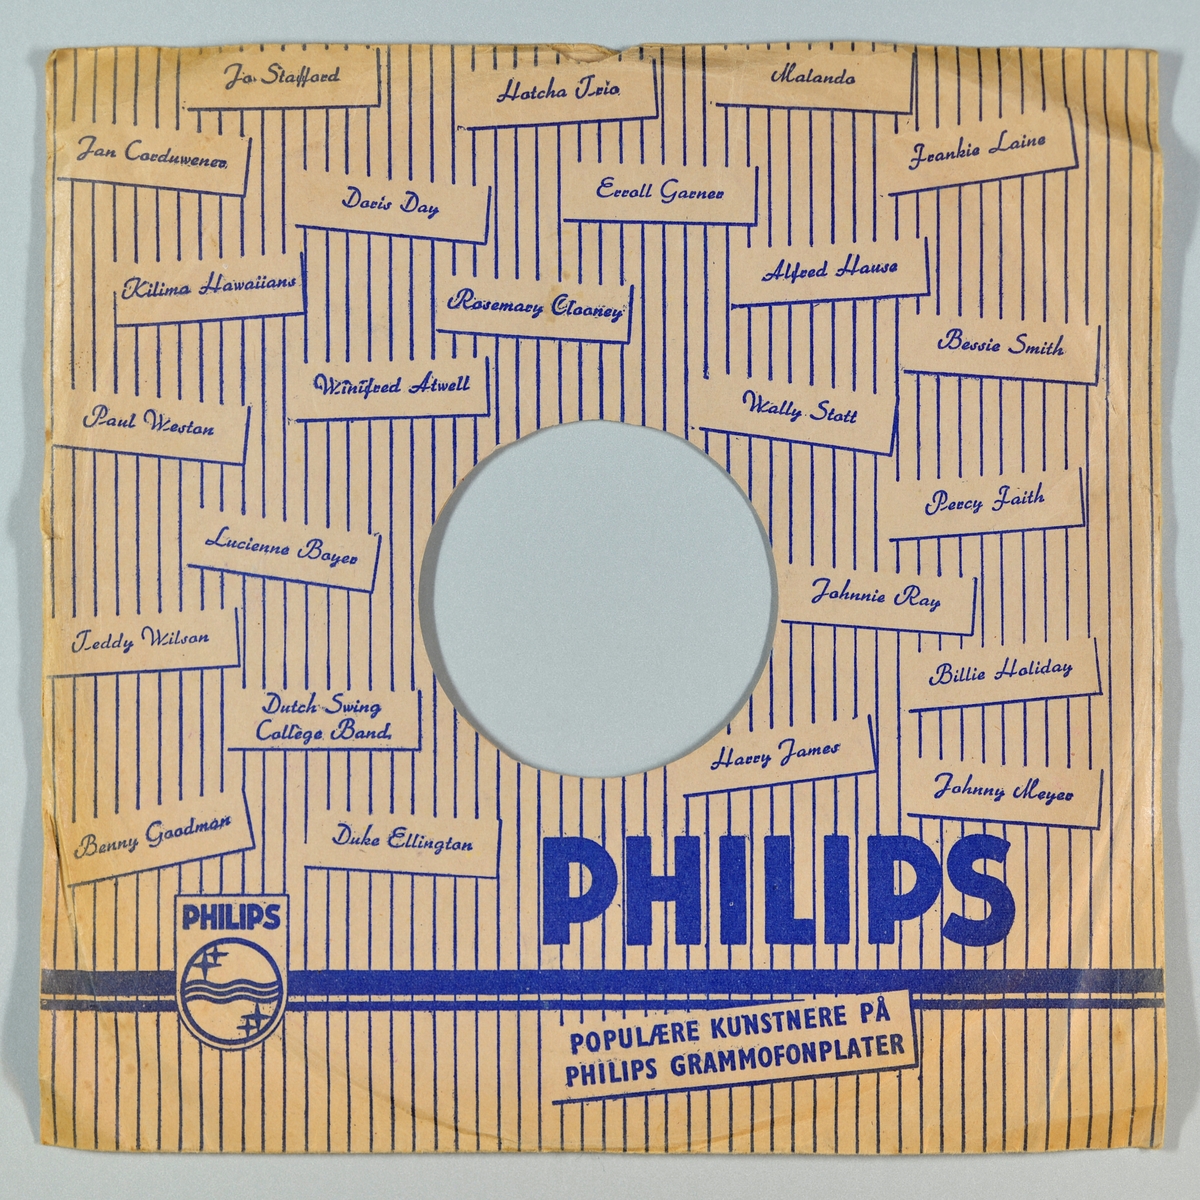 FTT.54159.01:
Svart grammofonplate laget av bakelitt og skjellak. Etiketten er blå med sølvskrift. Logoen til Philips er på etiketten

FTT.54159.02:
Plateomslag til platen laget av hvitt/beige papir med skrift/design i blått. Begge sidene har loddrette striper. På forsiden er logoen til Philips og over hele omslaget står det navn på ulike artister gitt ut på Philips. På baksiden er det små informasjonsbokser om grammofonmusikk, langspilleplater, Philips fjærlette pick-up og et bilde som viser forskjellen på en normal plate og en langspillplate.